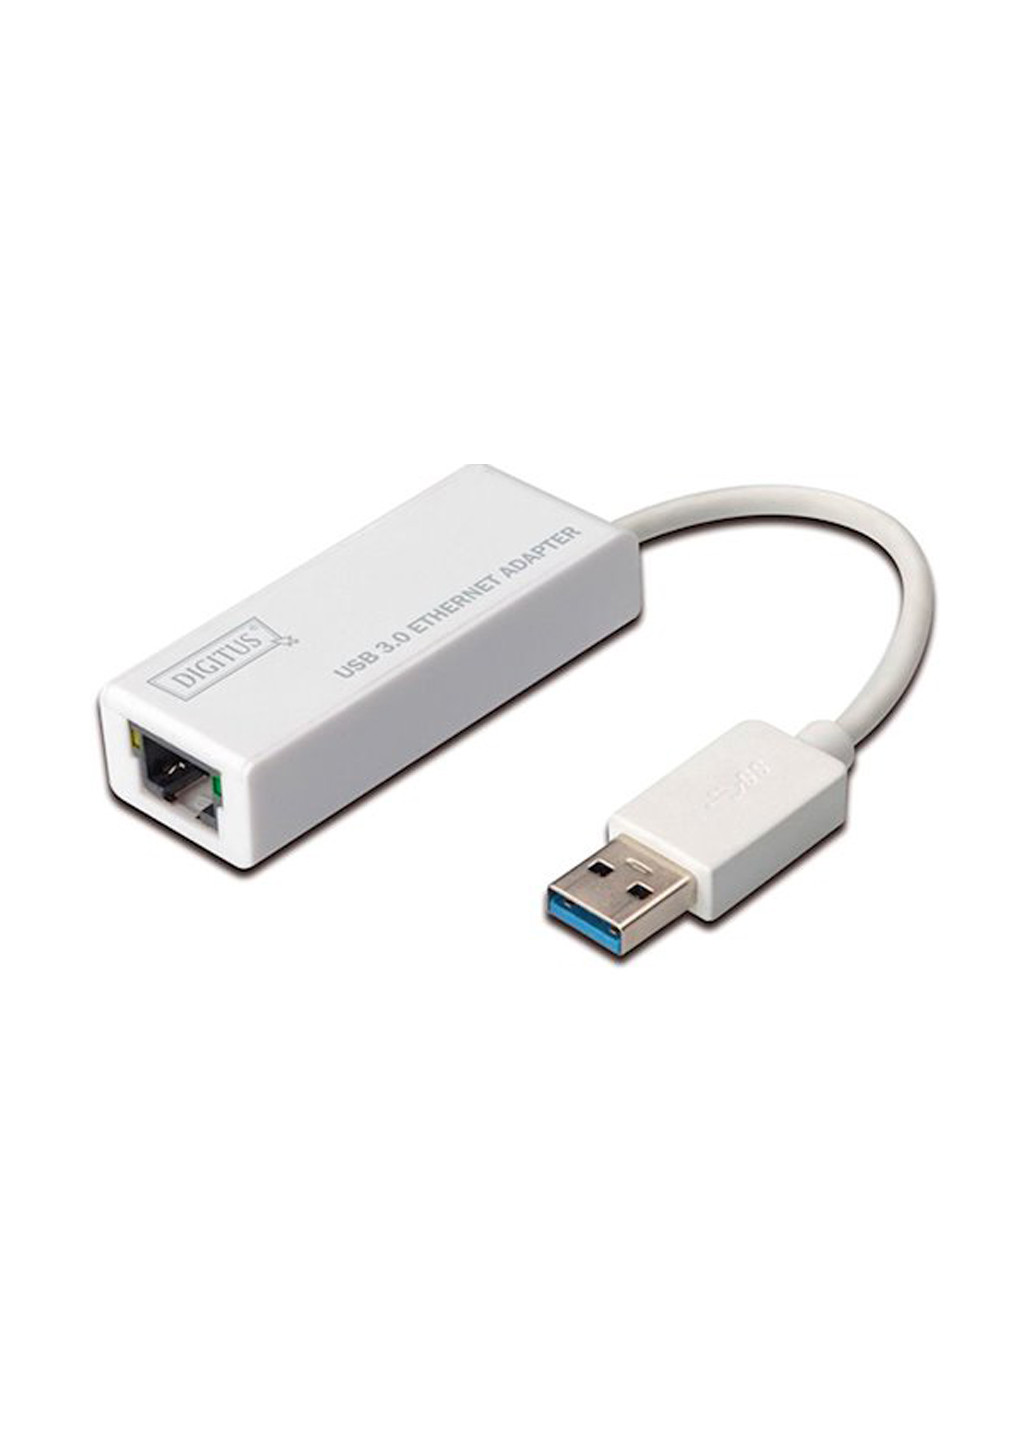 Адаптер USB 3.0 to Gigabit Ethernet (DA-70250-1) Digitus адаптер USB 3.0 to Gigabit Ethernet (DA-70250-1) білий